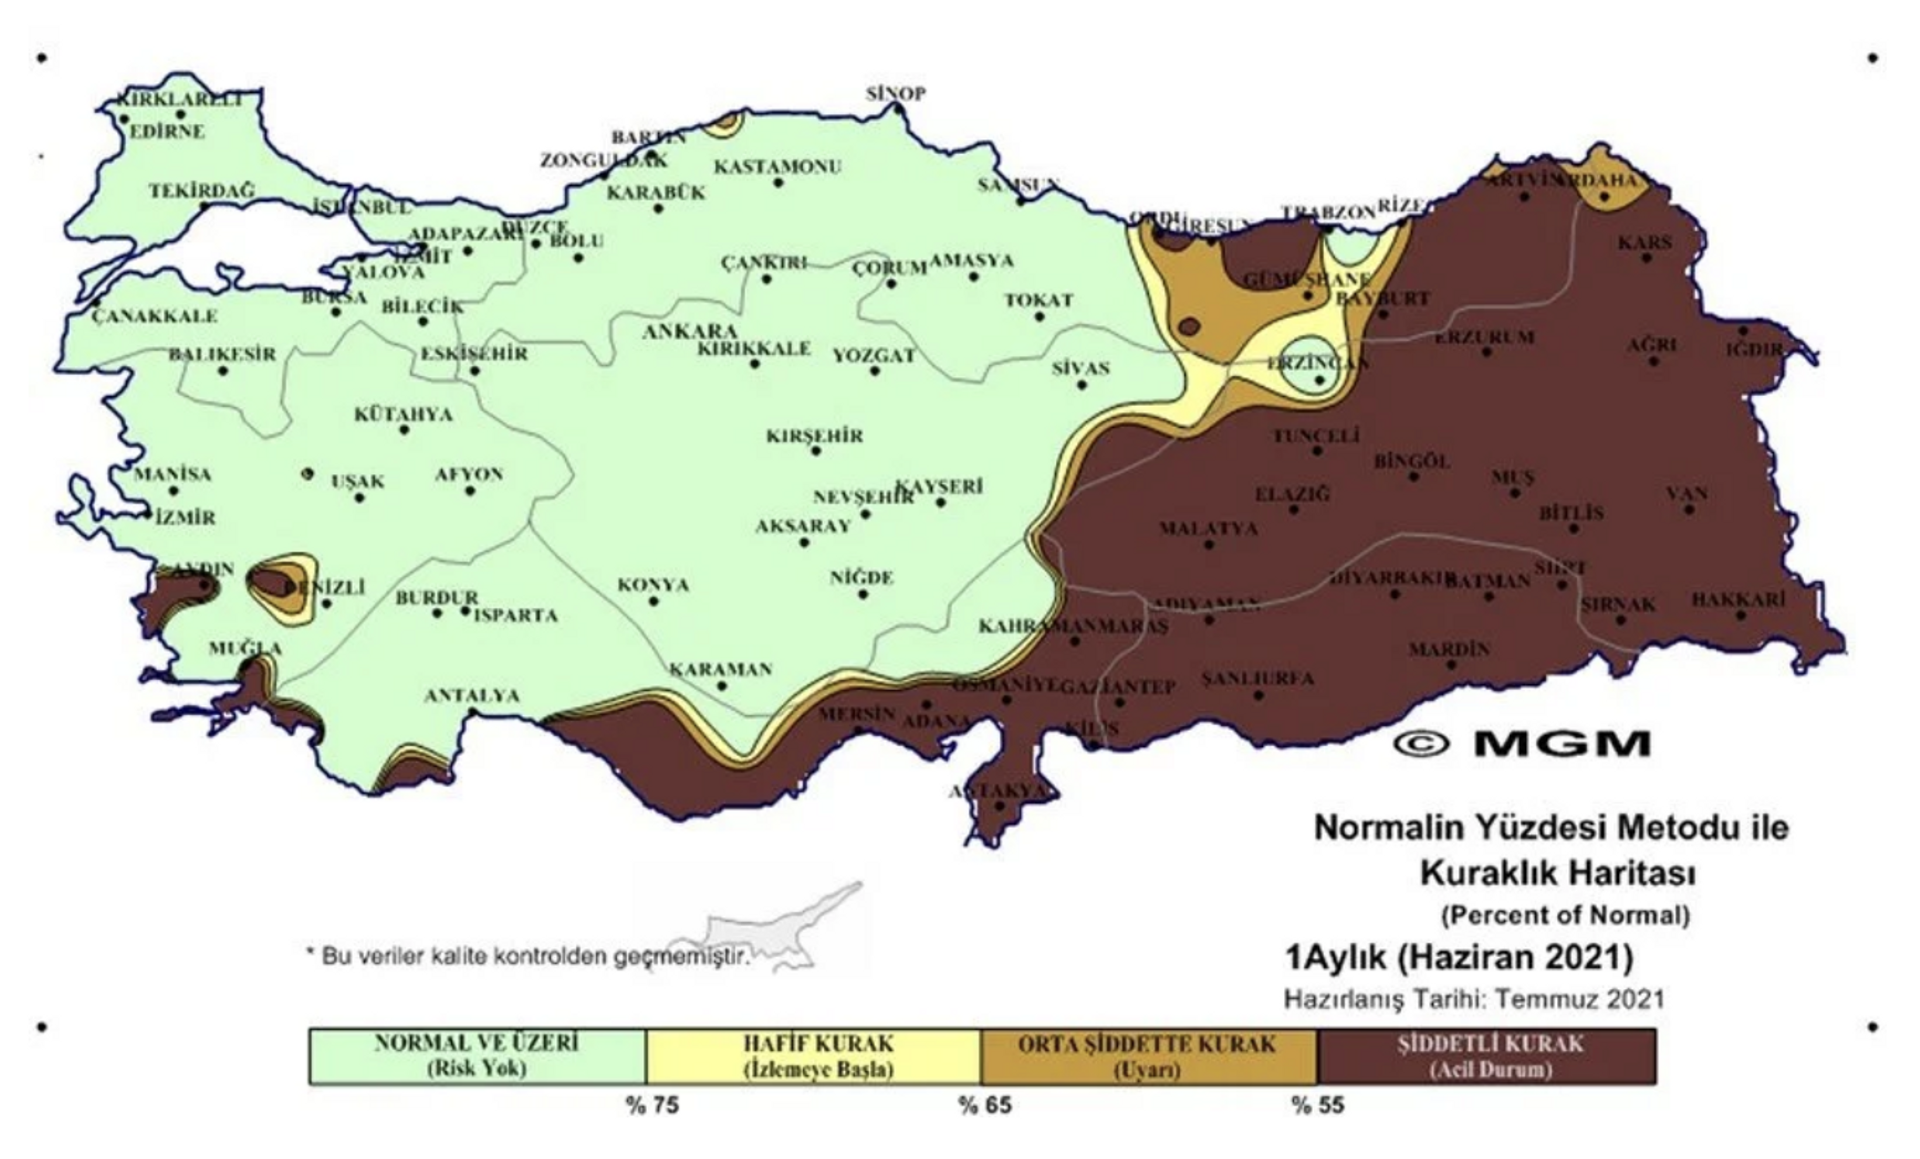 Normalin Yüzdesi Metodu ile 1 Aylık Kuraklık Haritası  - Sputnik Türkiye, 1920, 10.08.2021